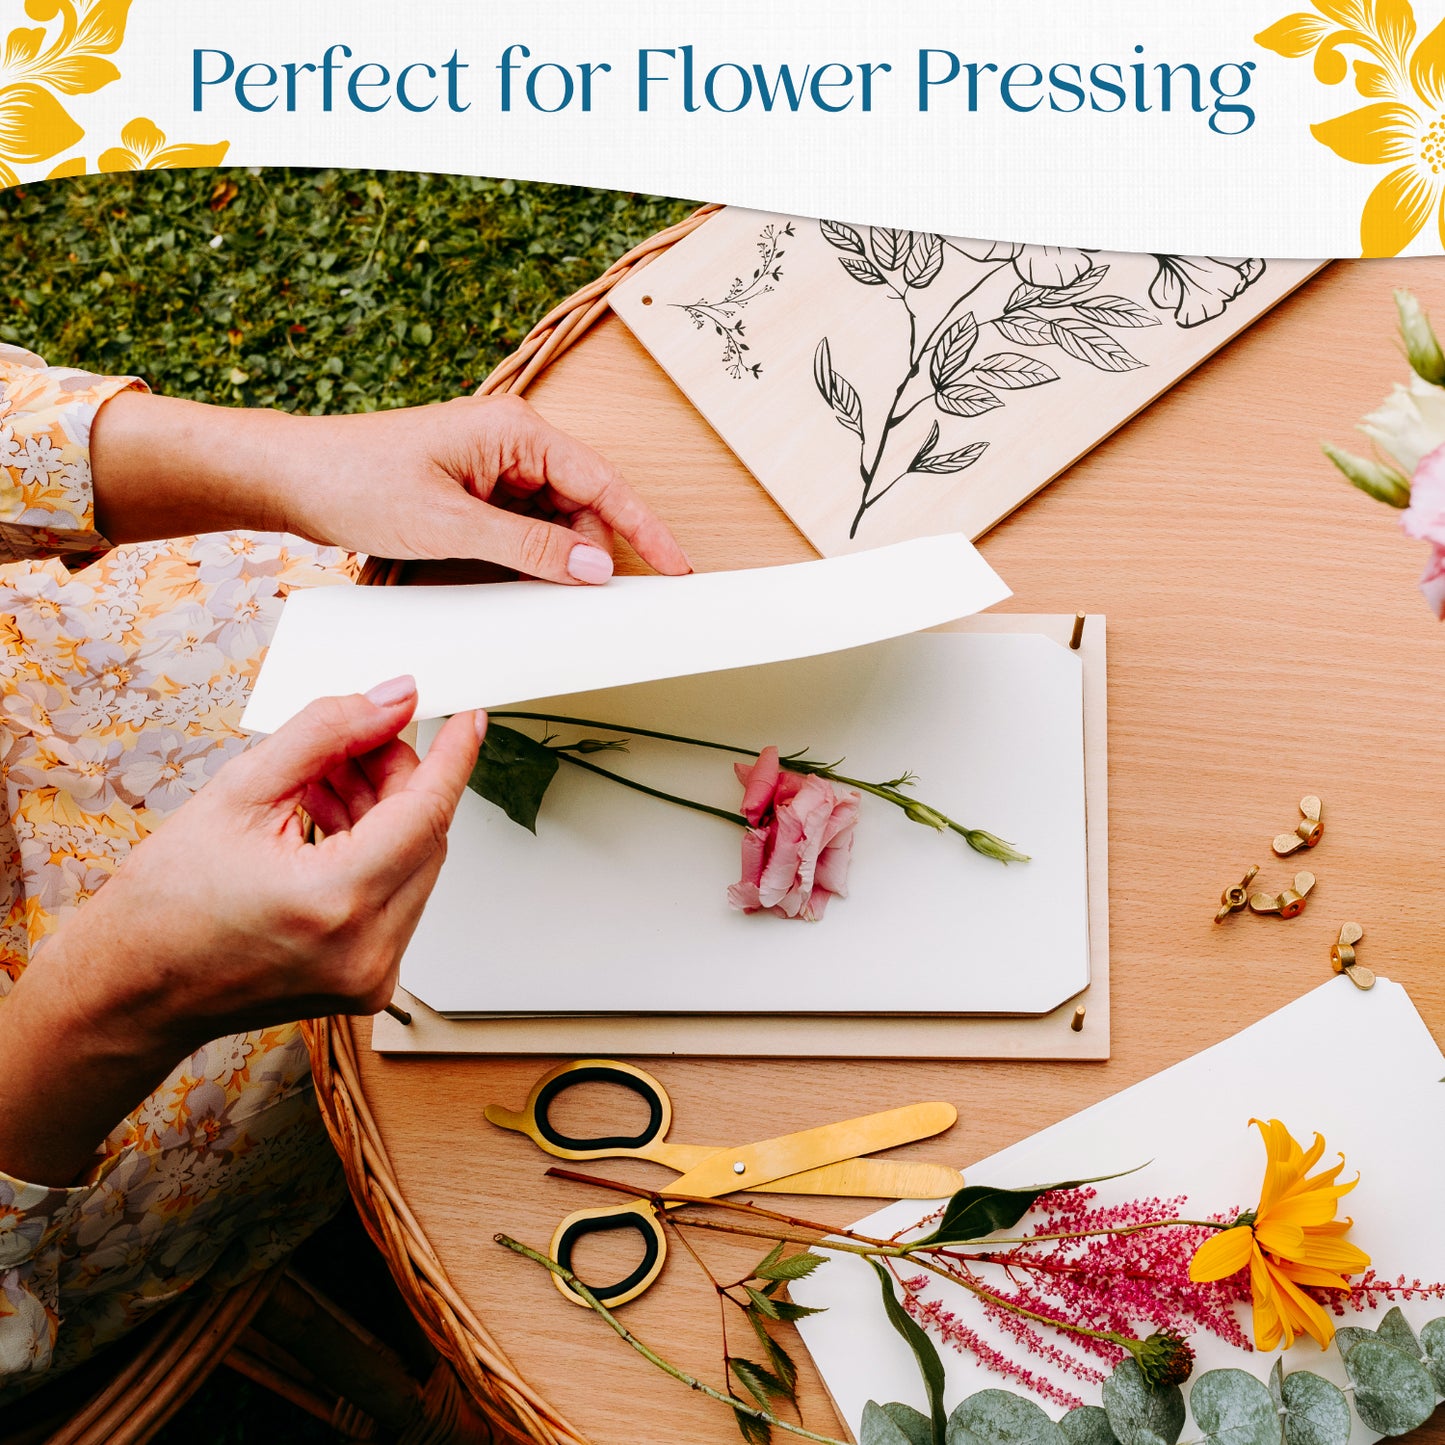 Blotter Paper Refill Pack for Flower Pressing – Berstuk Store